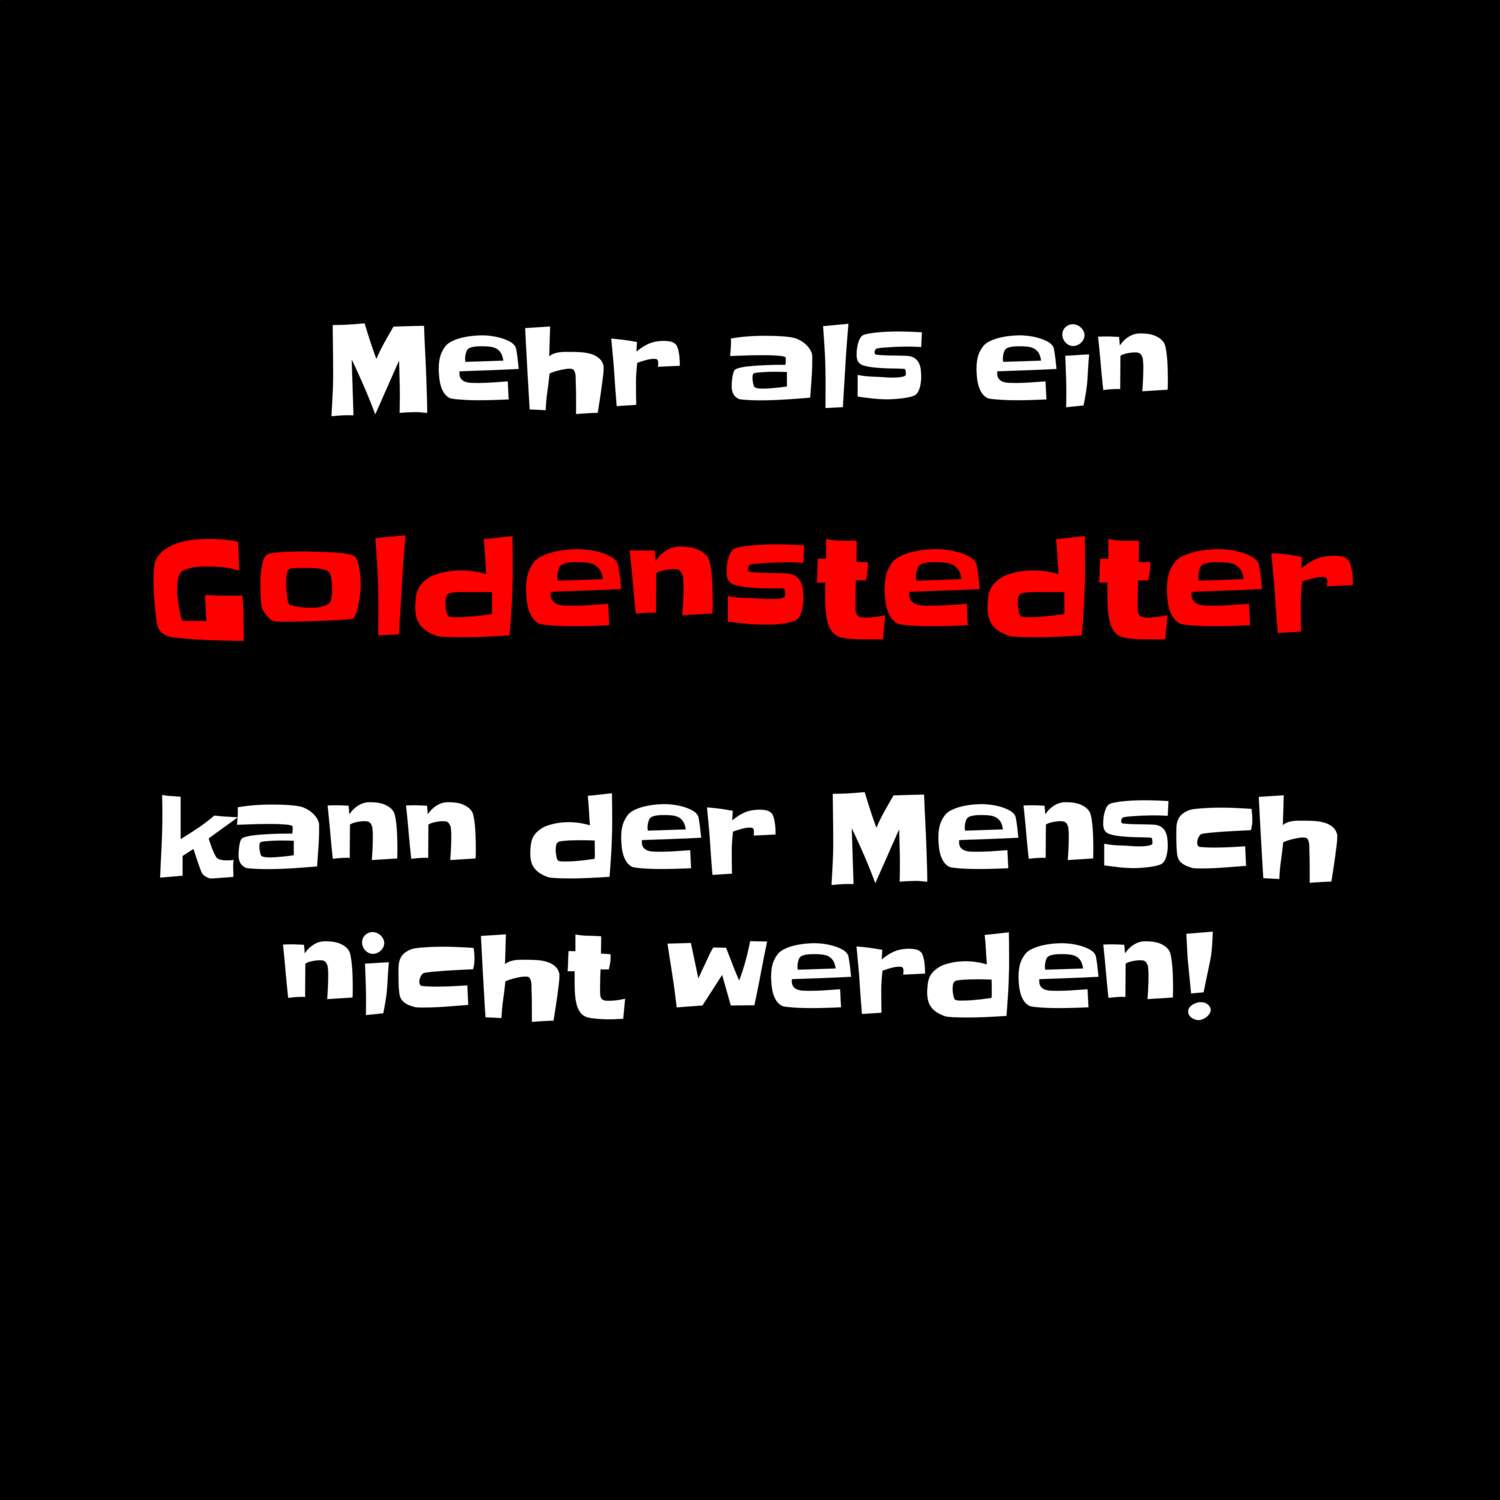 Goldenstedt T-Shirt »Mehr als ein«